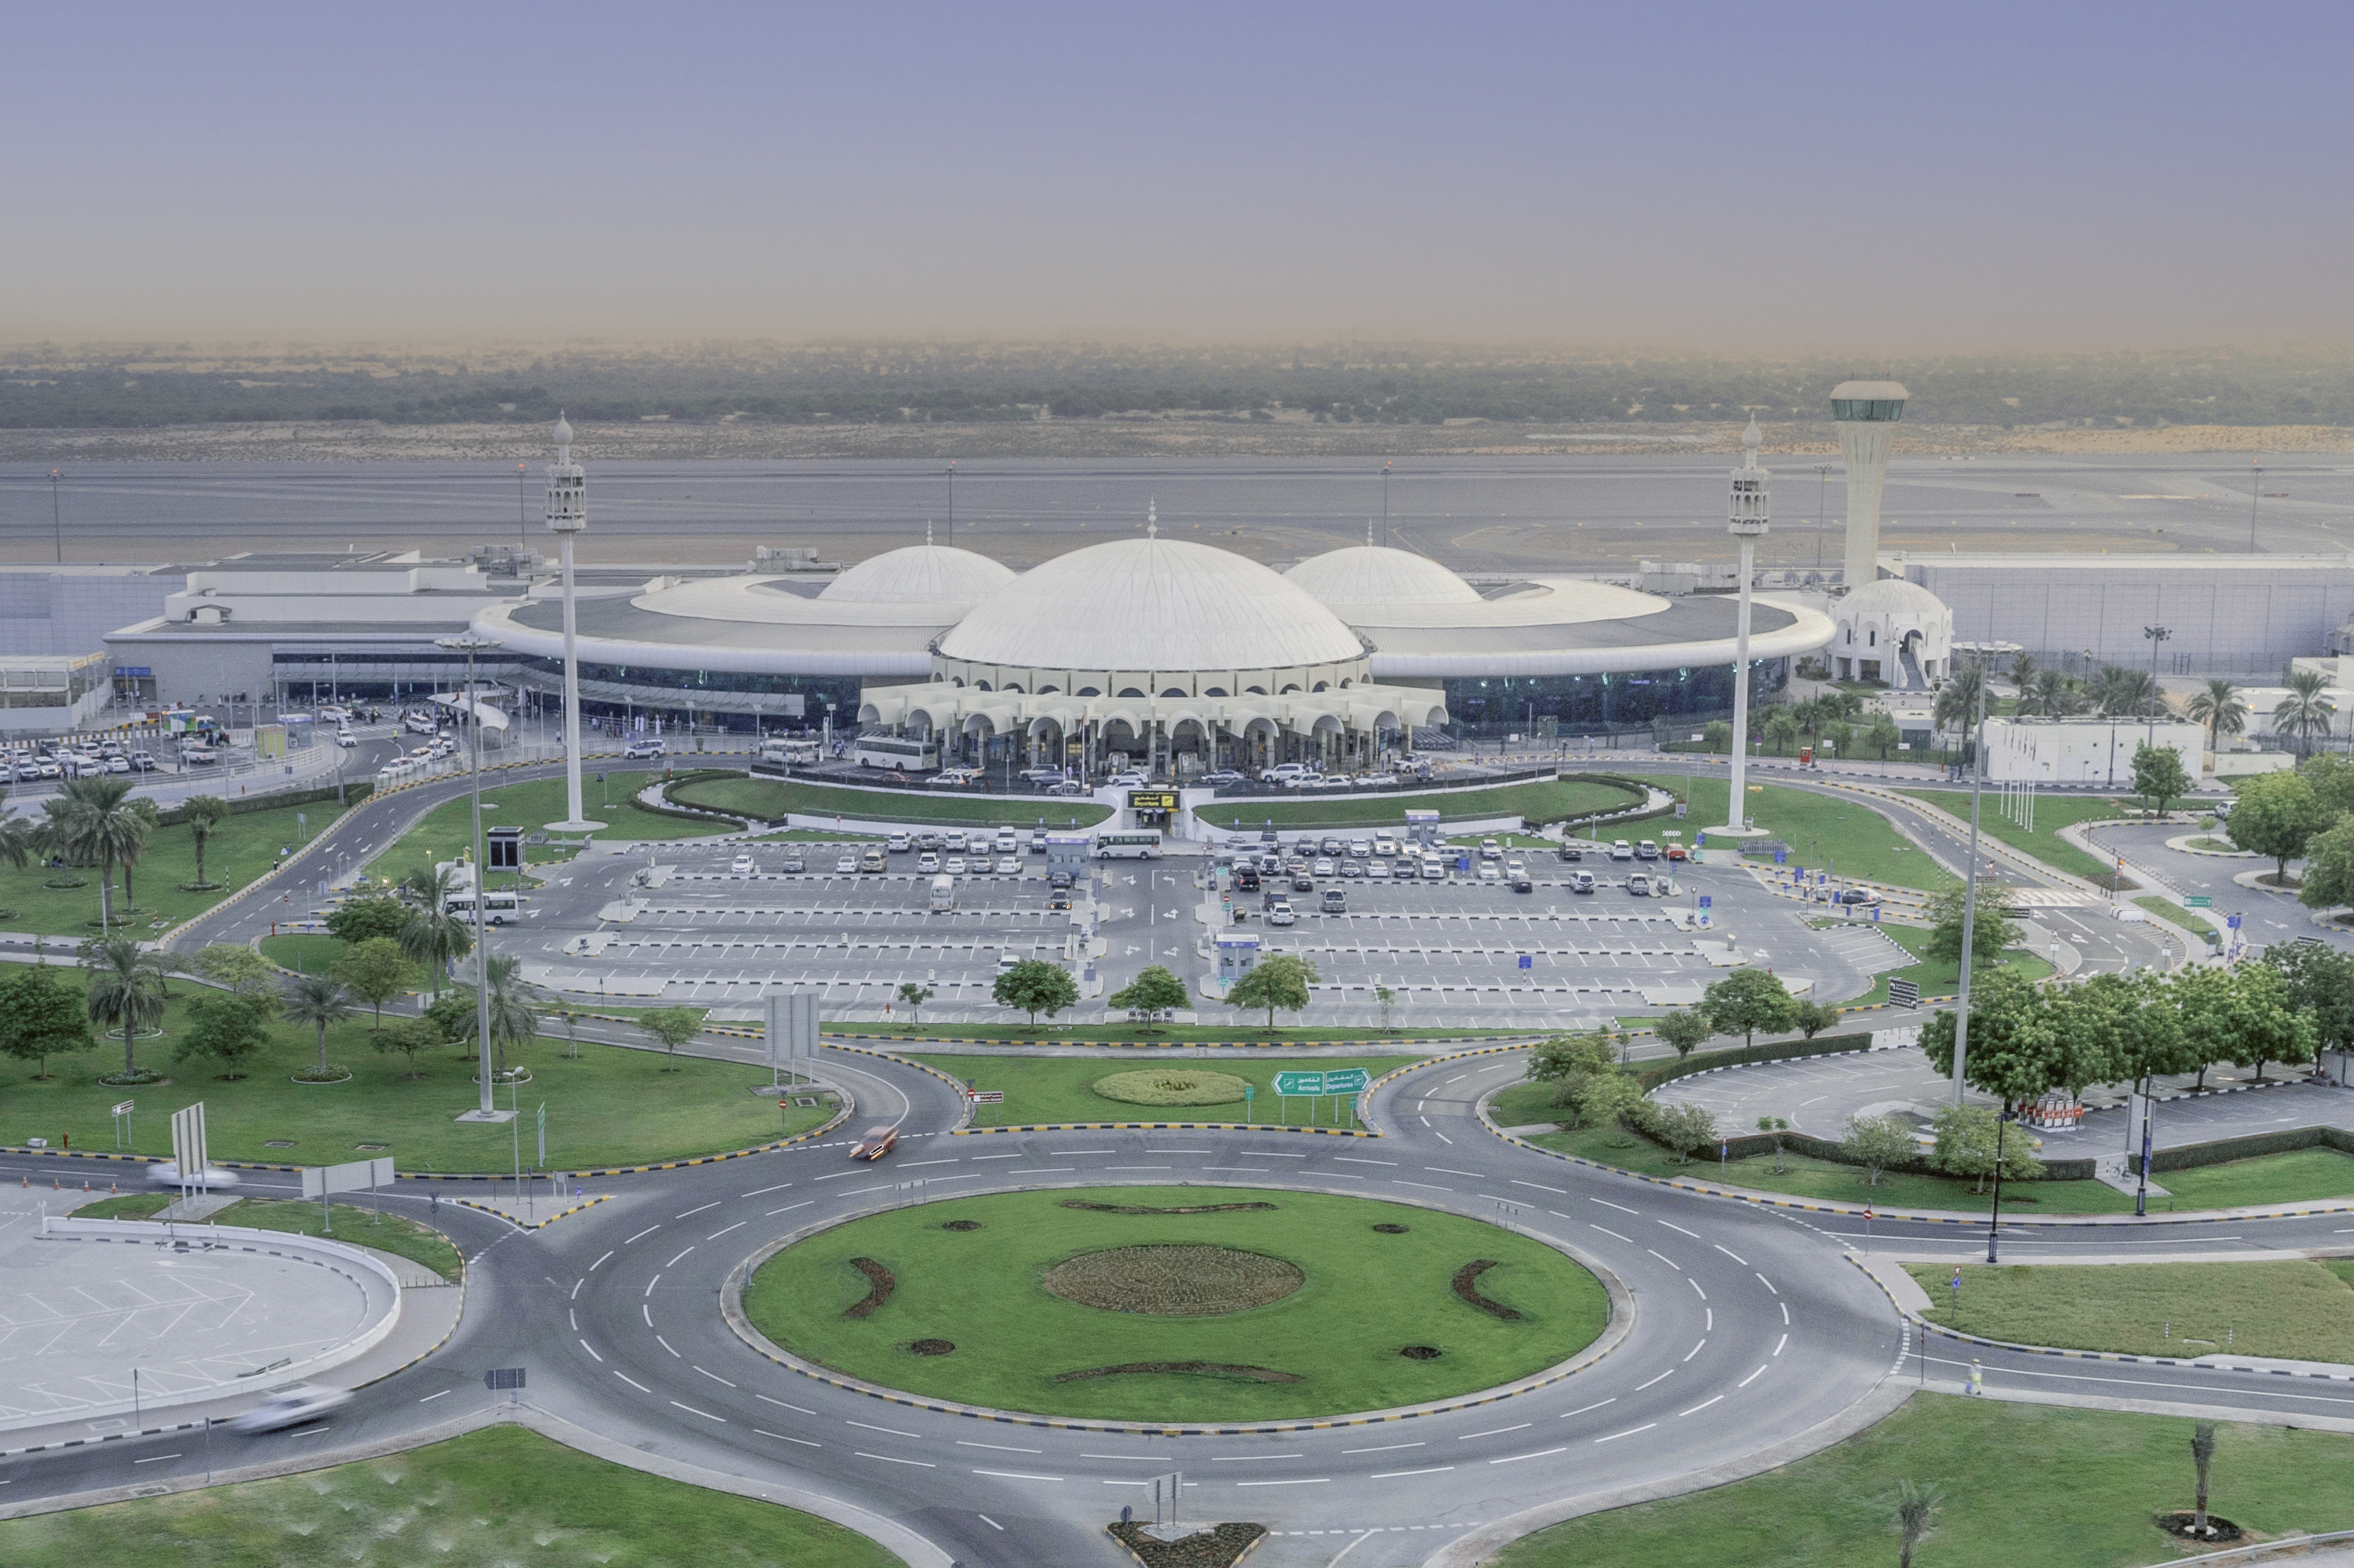 Sharjah Airport prepares for surge in passengers during Haji season